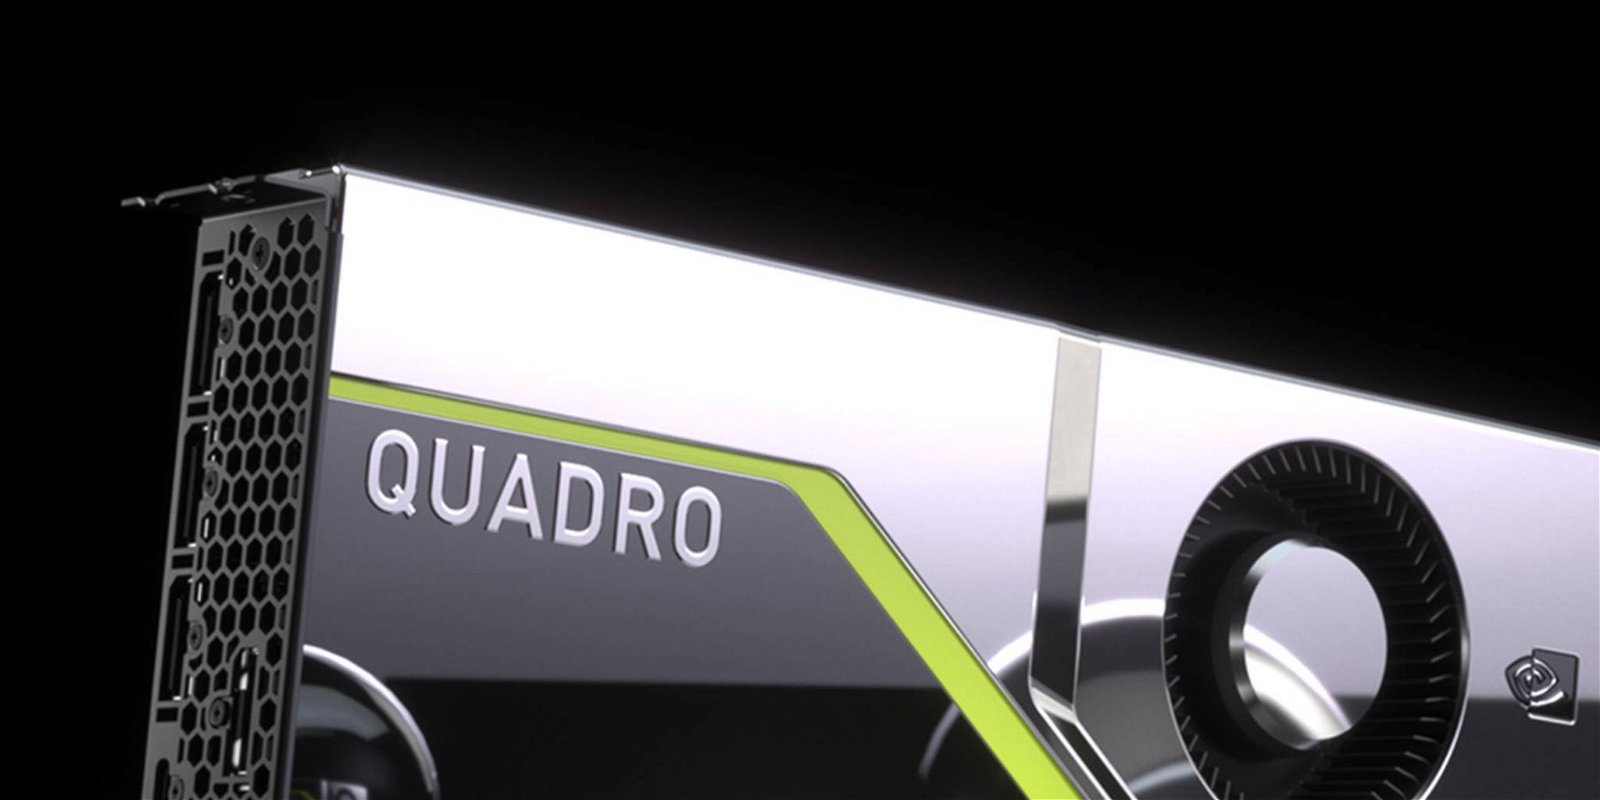 Immagine di Nvidia Quadro RTX 4000, Turing professionale a singolo slot e meno di 1000 dollari